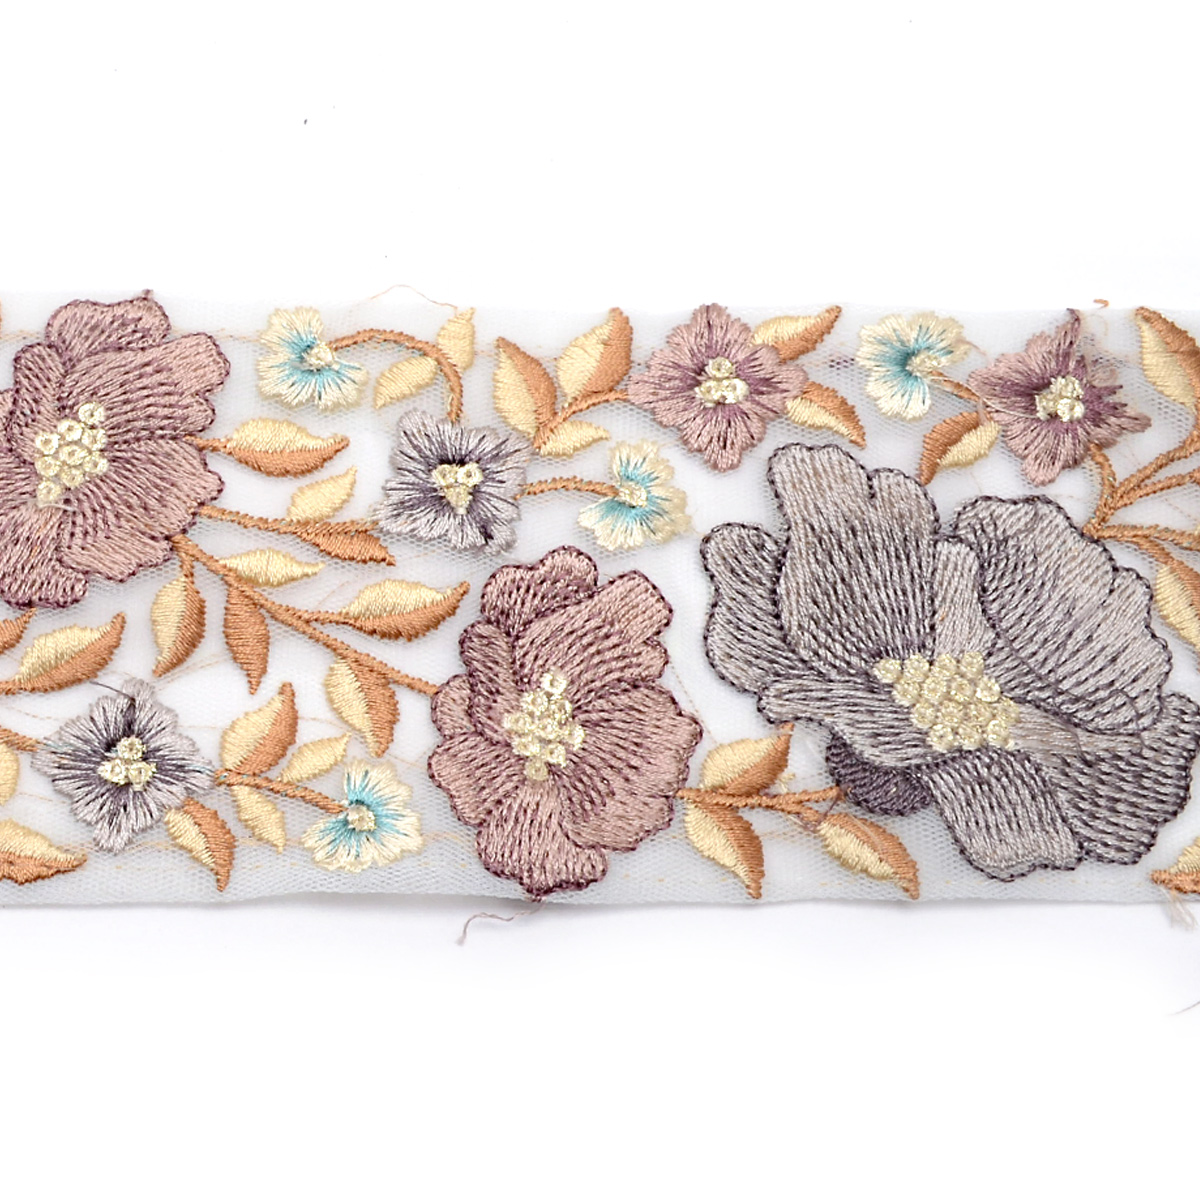 インド刺繍リボン ラメ糸と優雅なお花のシアー刺繍リボン 幅80mm 10cm